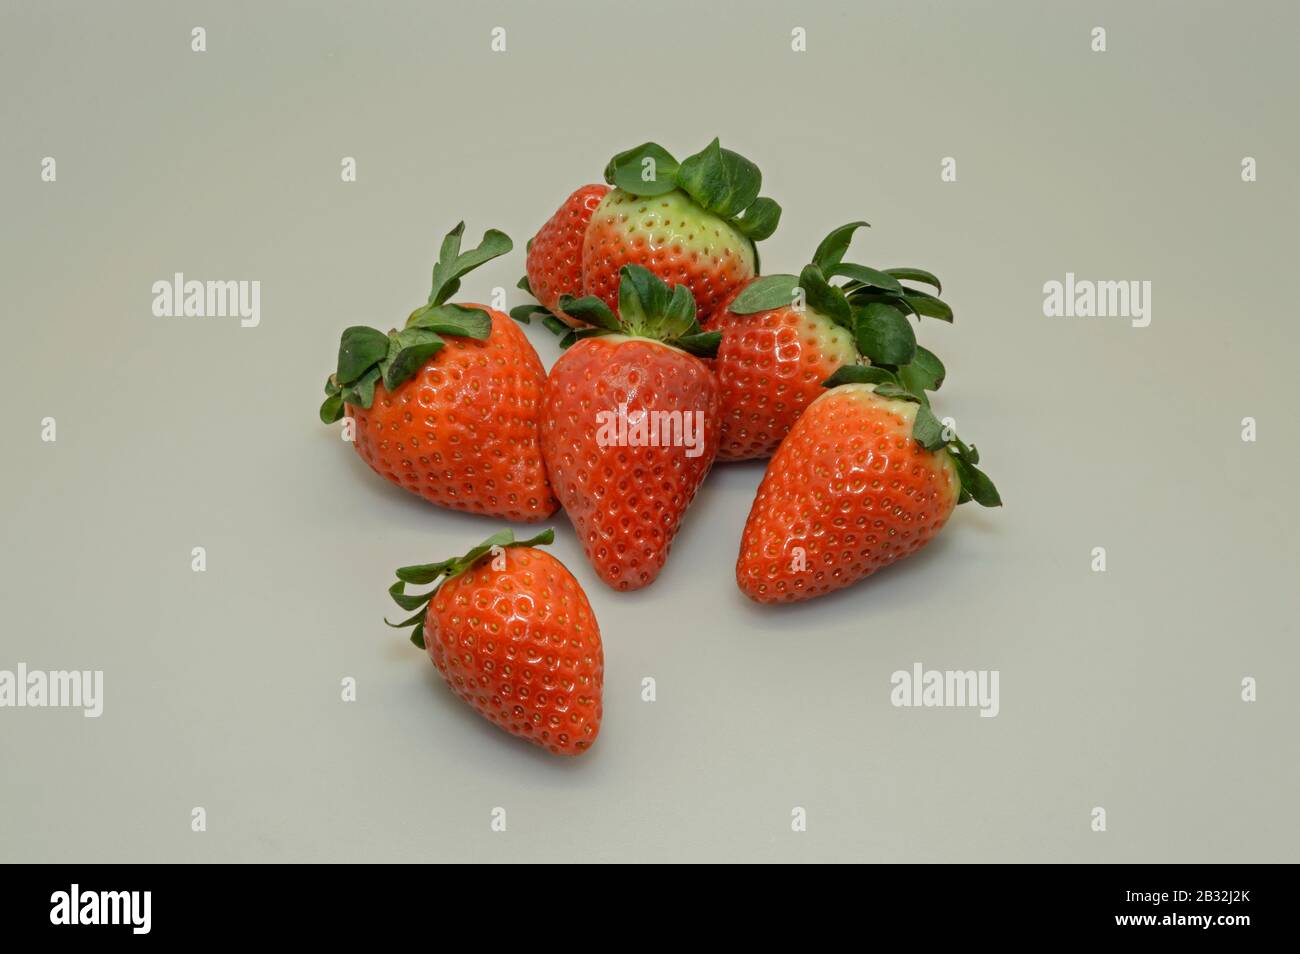 Erdbeere ist eine rote und niedrige Frucht. Es gibt mehrere Erdbeerarten, die in verschiedenen Teilen der Welt angebaut werden. Stockfoto